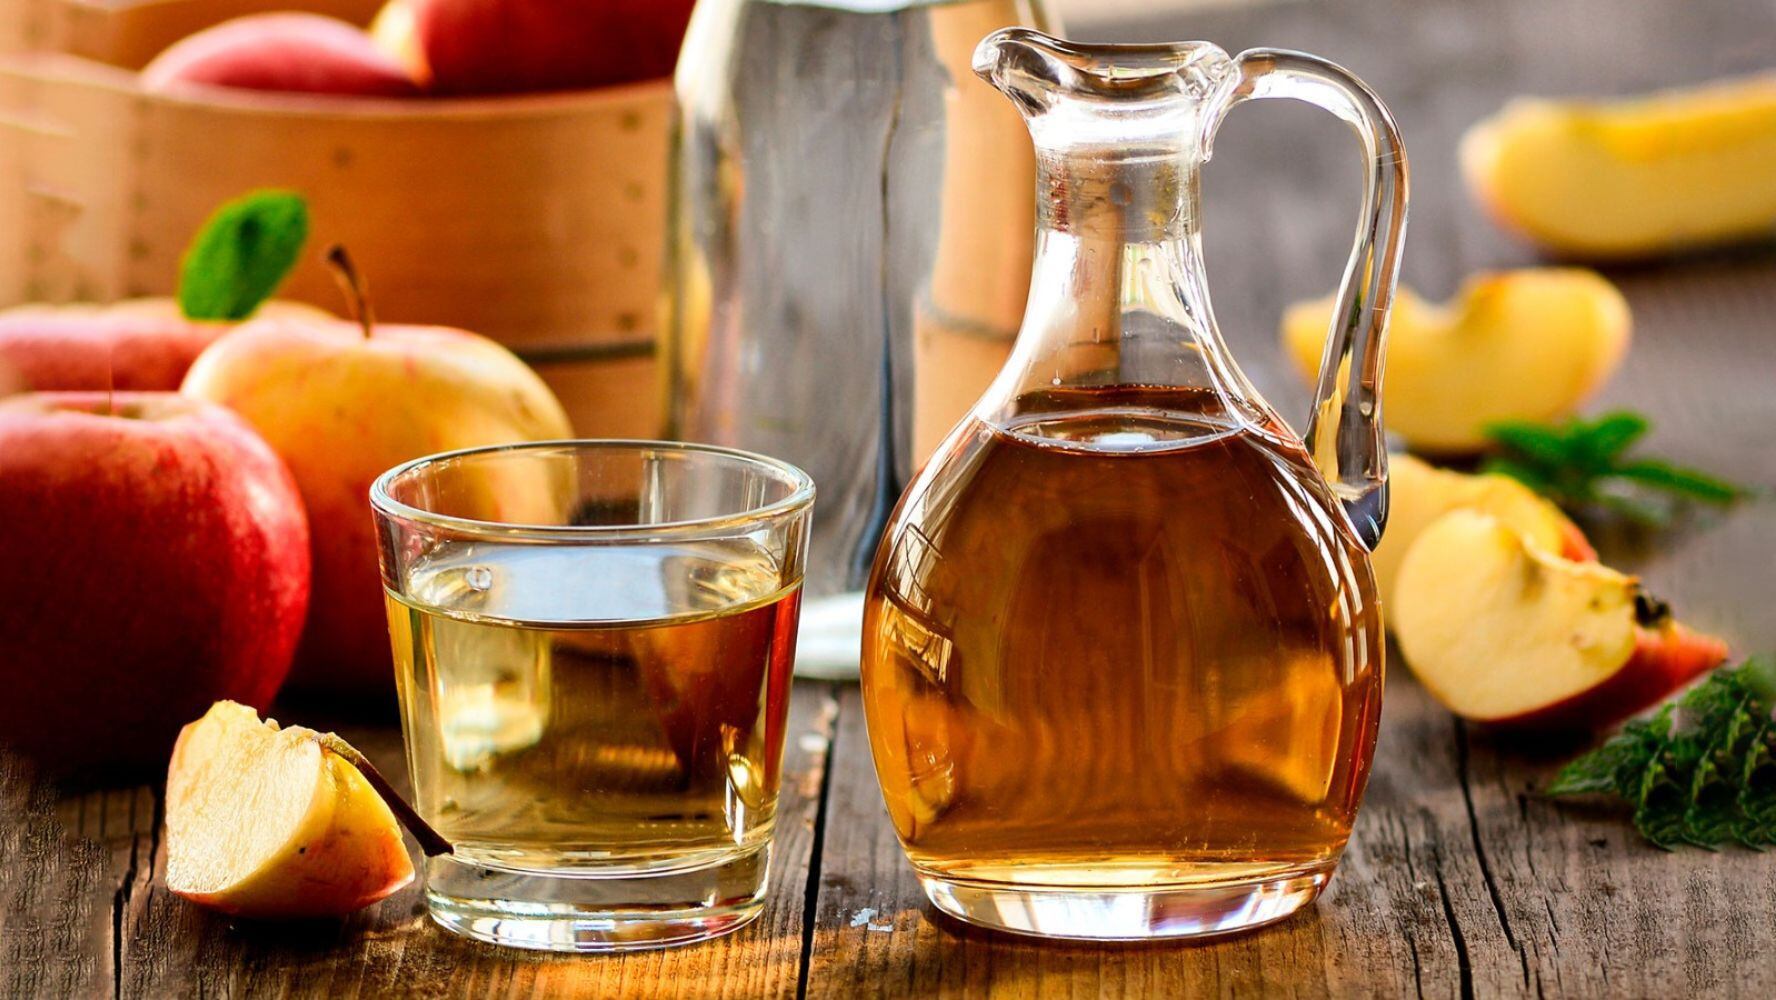 El vinagre de sidra de manzana puede perjudicar la salud si se consume en exceso. (Foto: Shutterstock)